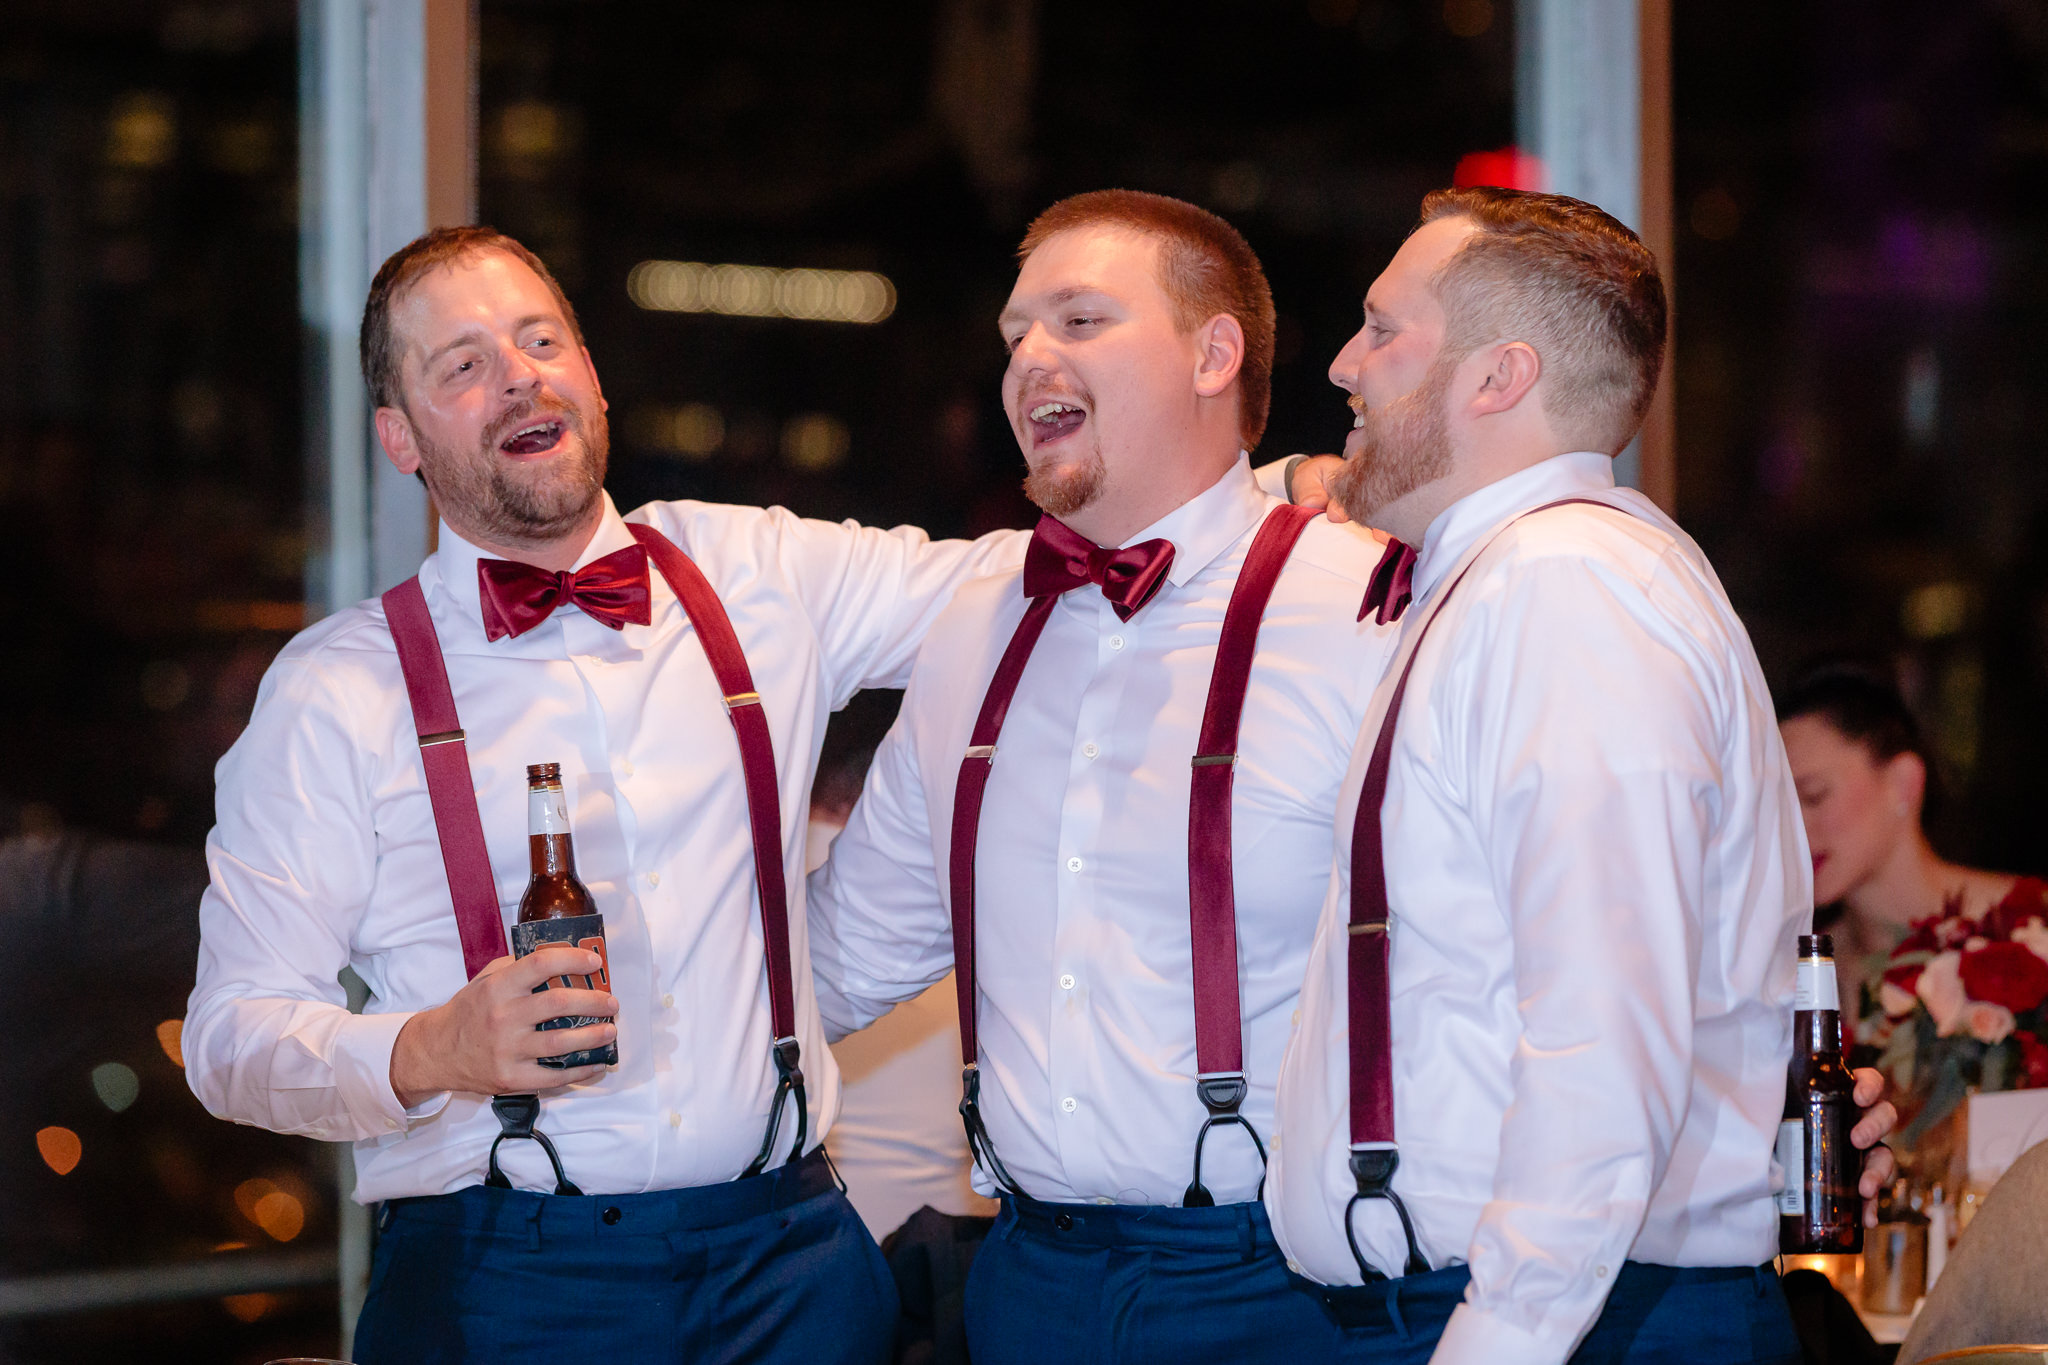 Groomsmen sing together at a LeMont wedding reception